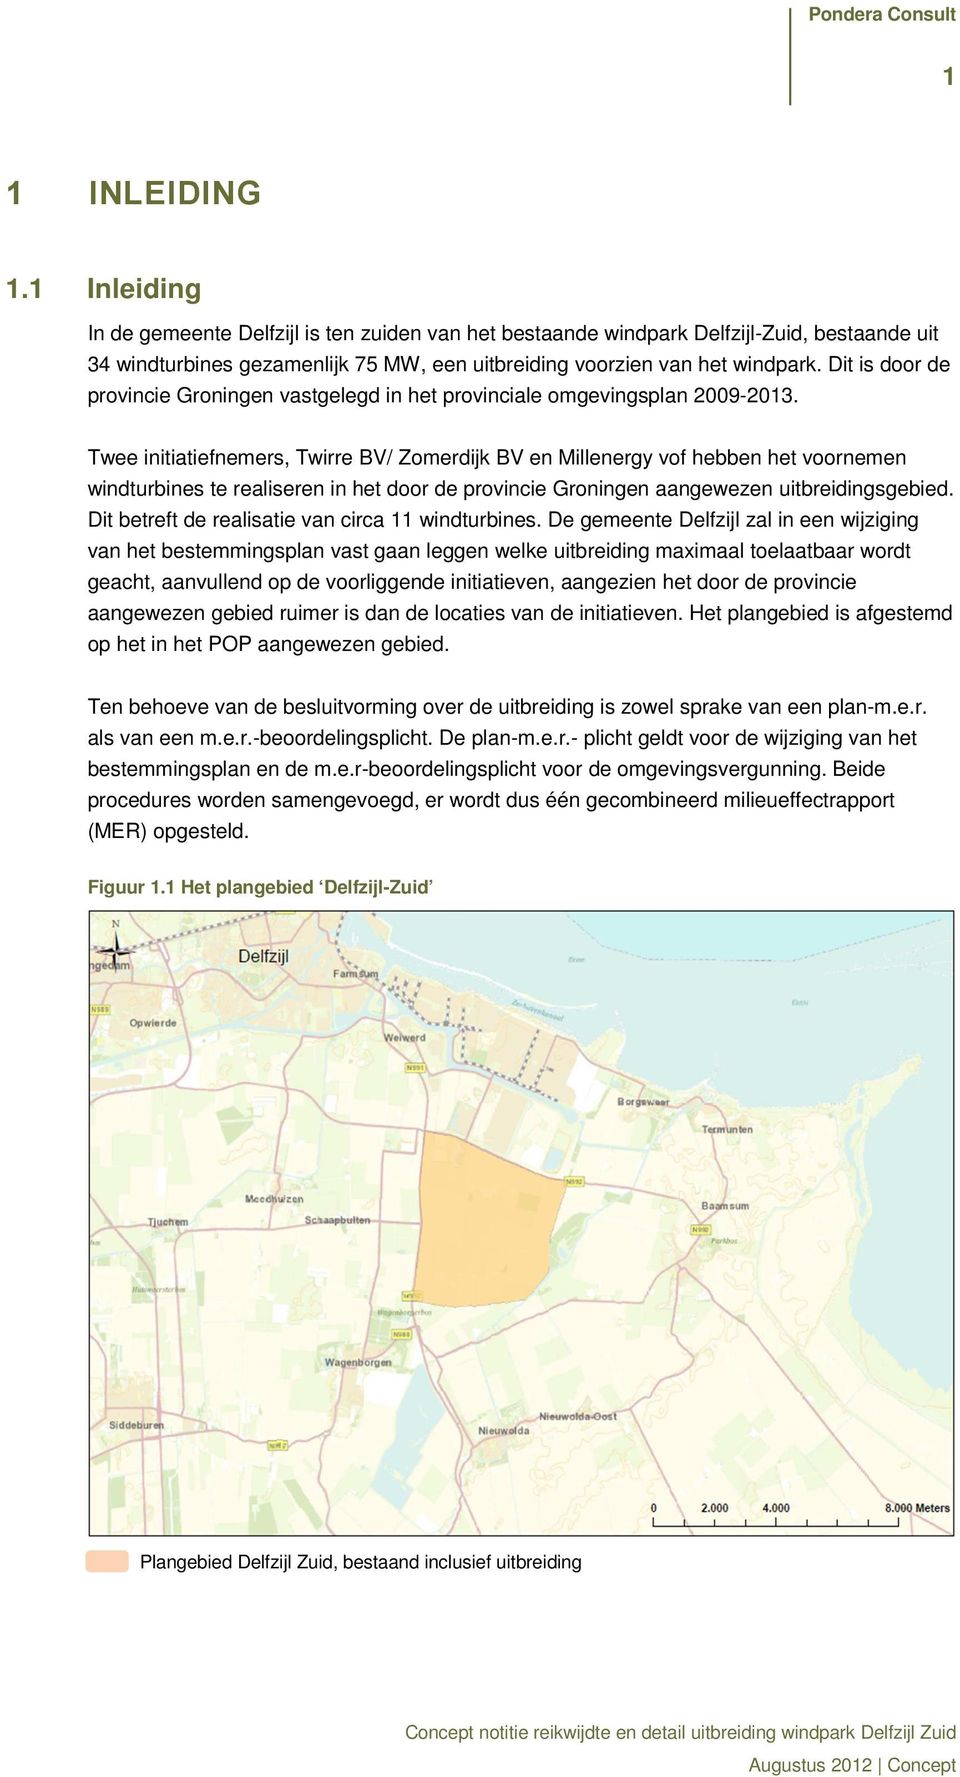 Twee initiatiefnemers, Twirre BV/ Zomerdijk BV en Millenergy vof hebben het voornemen windturbines te realiseren in het door de provincie Groningen aangewezen uitbreidingsgebied.